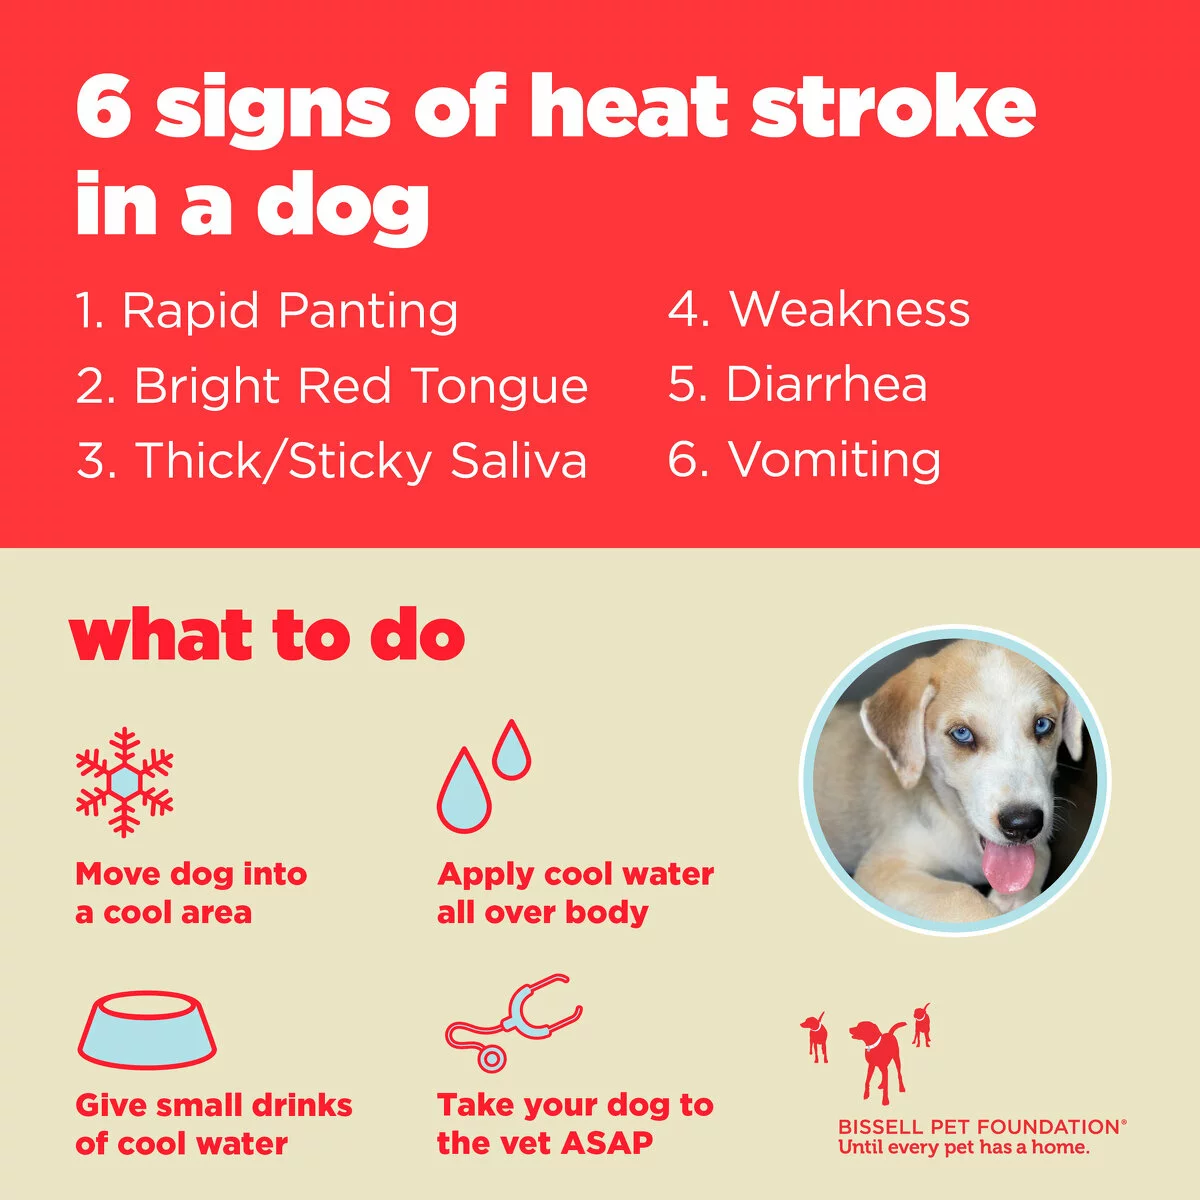 Signs of heatstroke in a dog